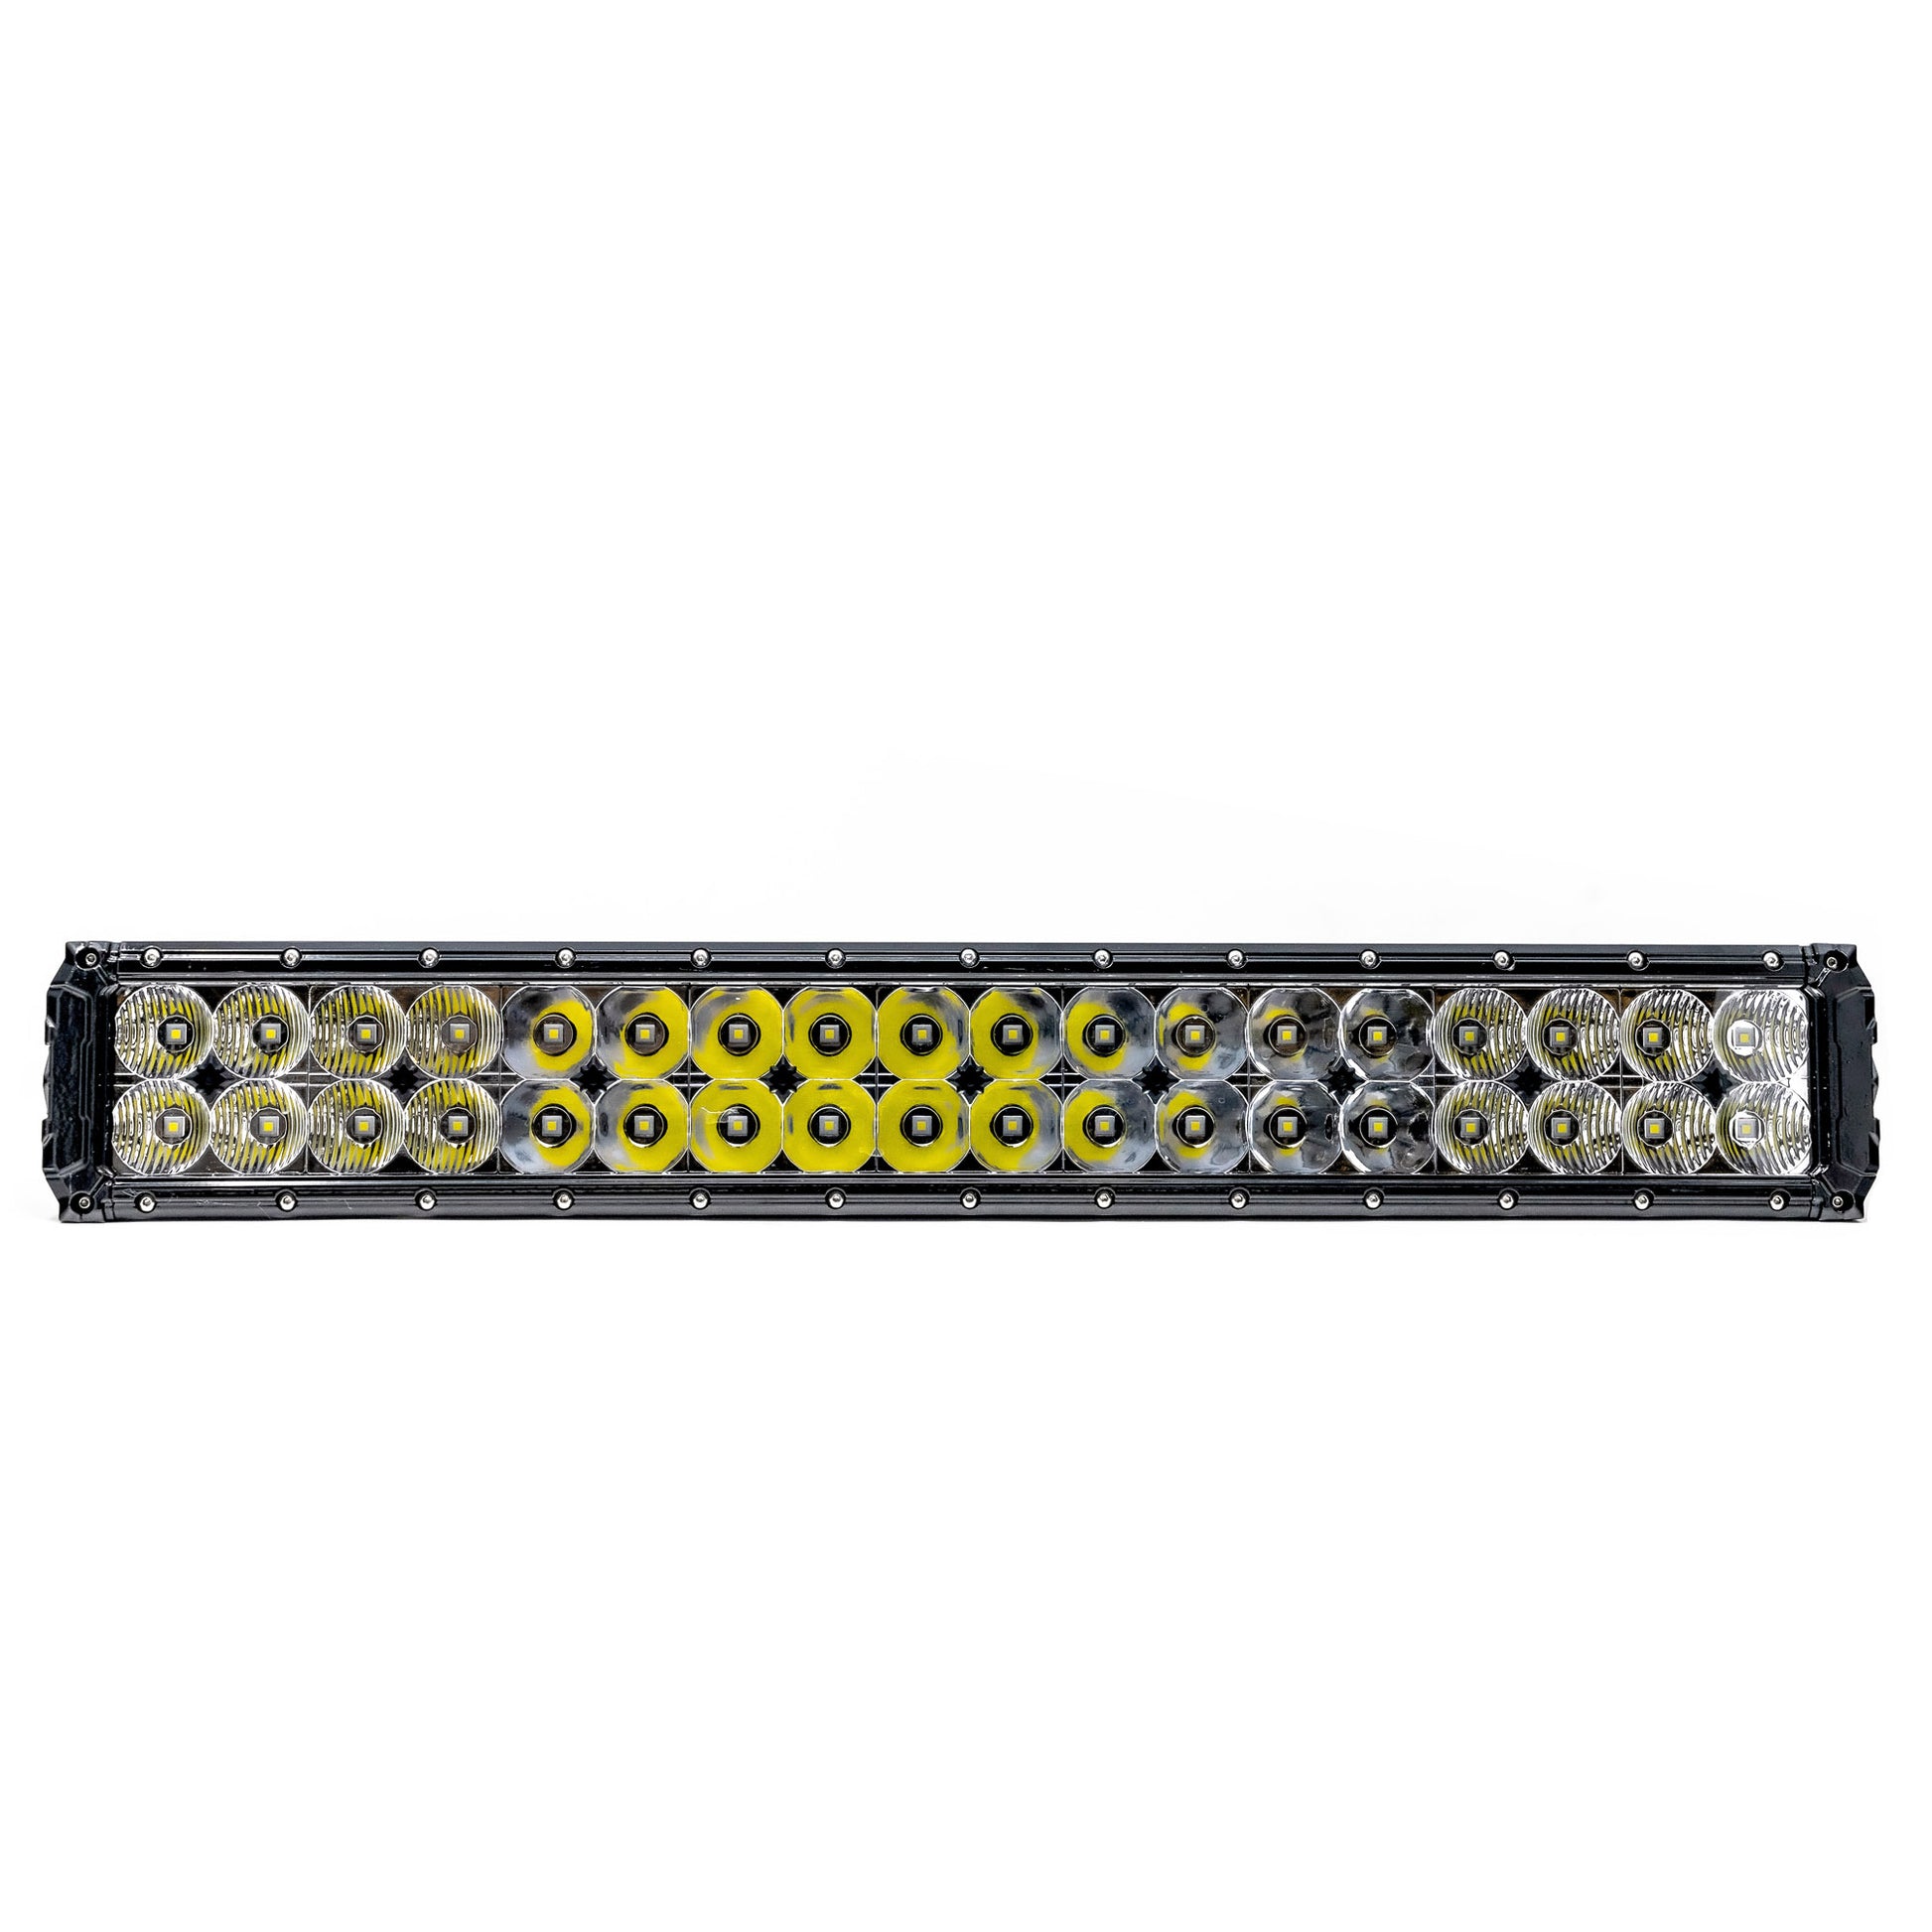 Alpena TrekTec LED Light Bar S22, 12V, Model 71067, Fit Type